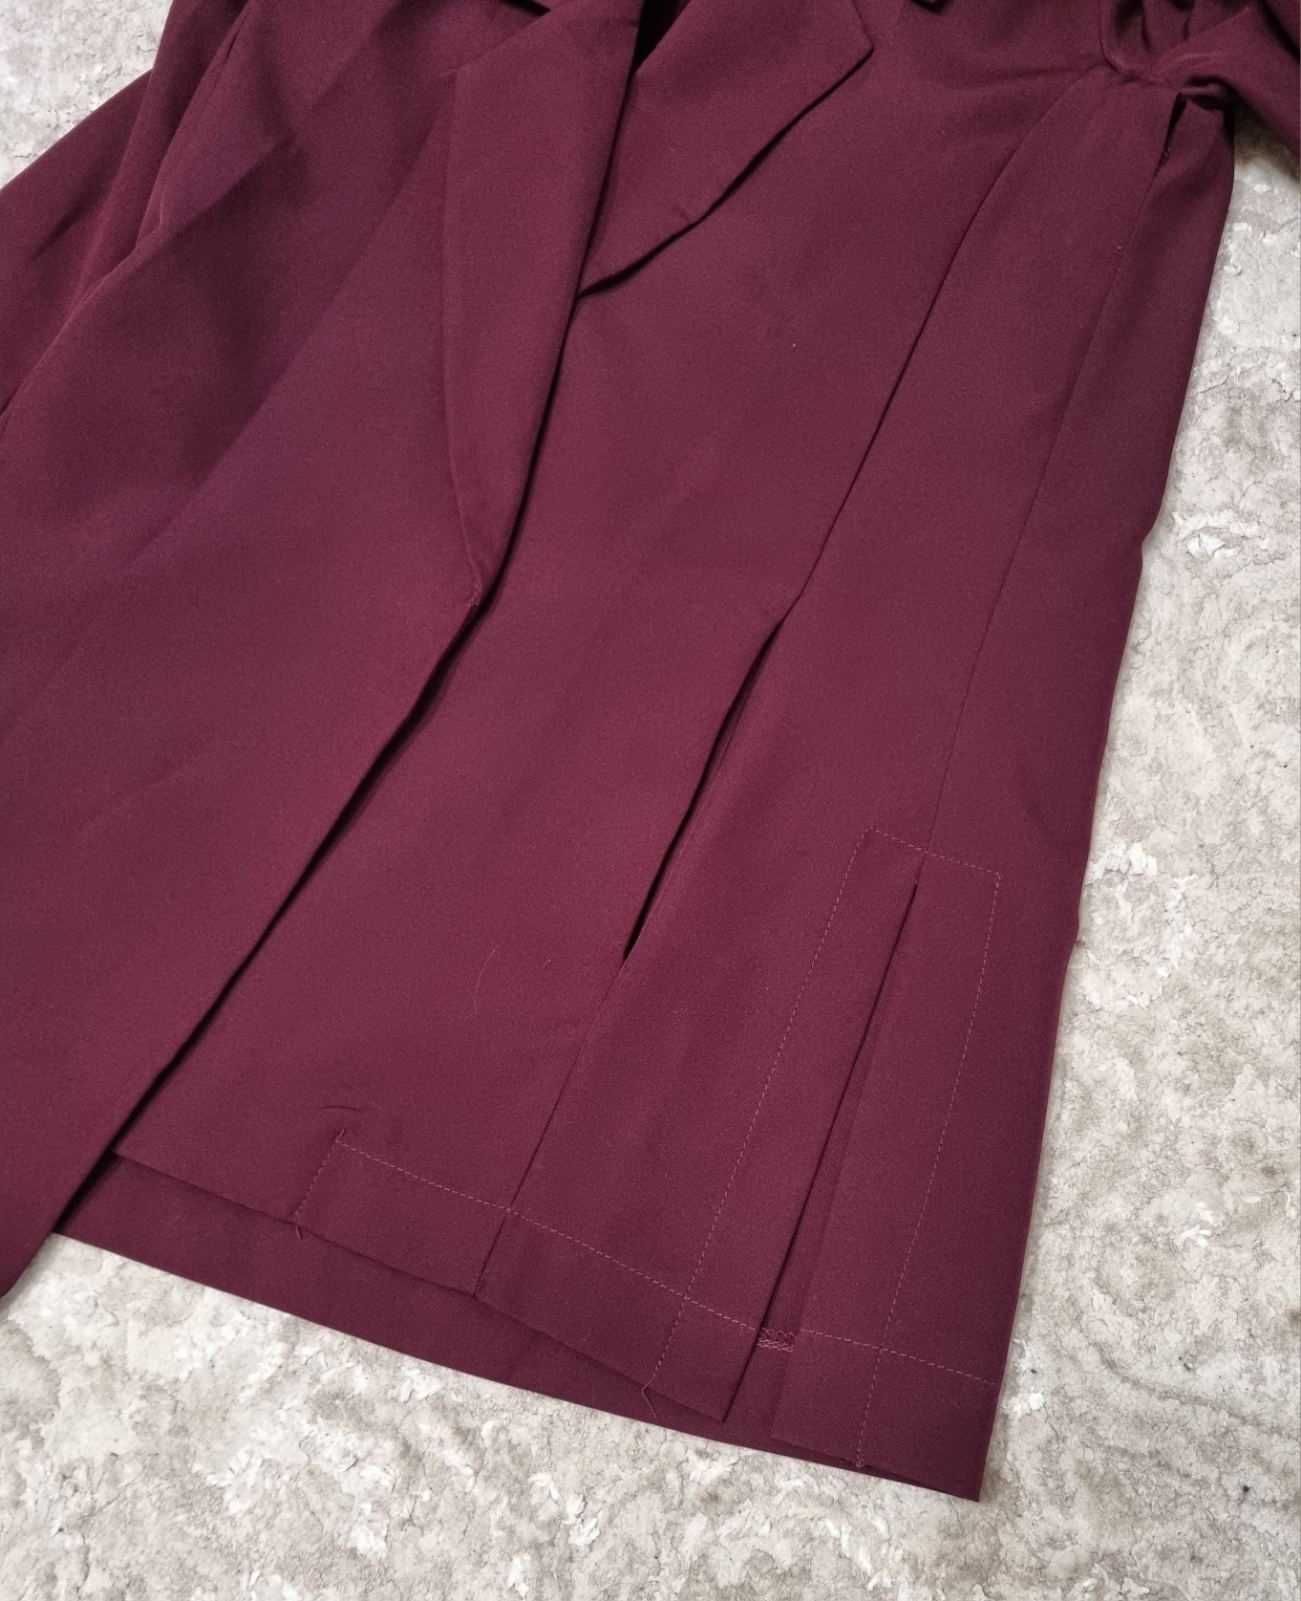 Пиджак Le Katrin бордовый с карманами